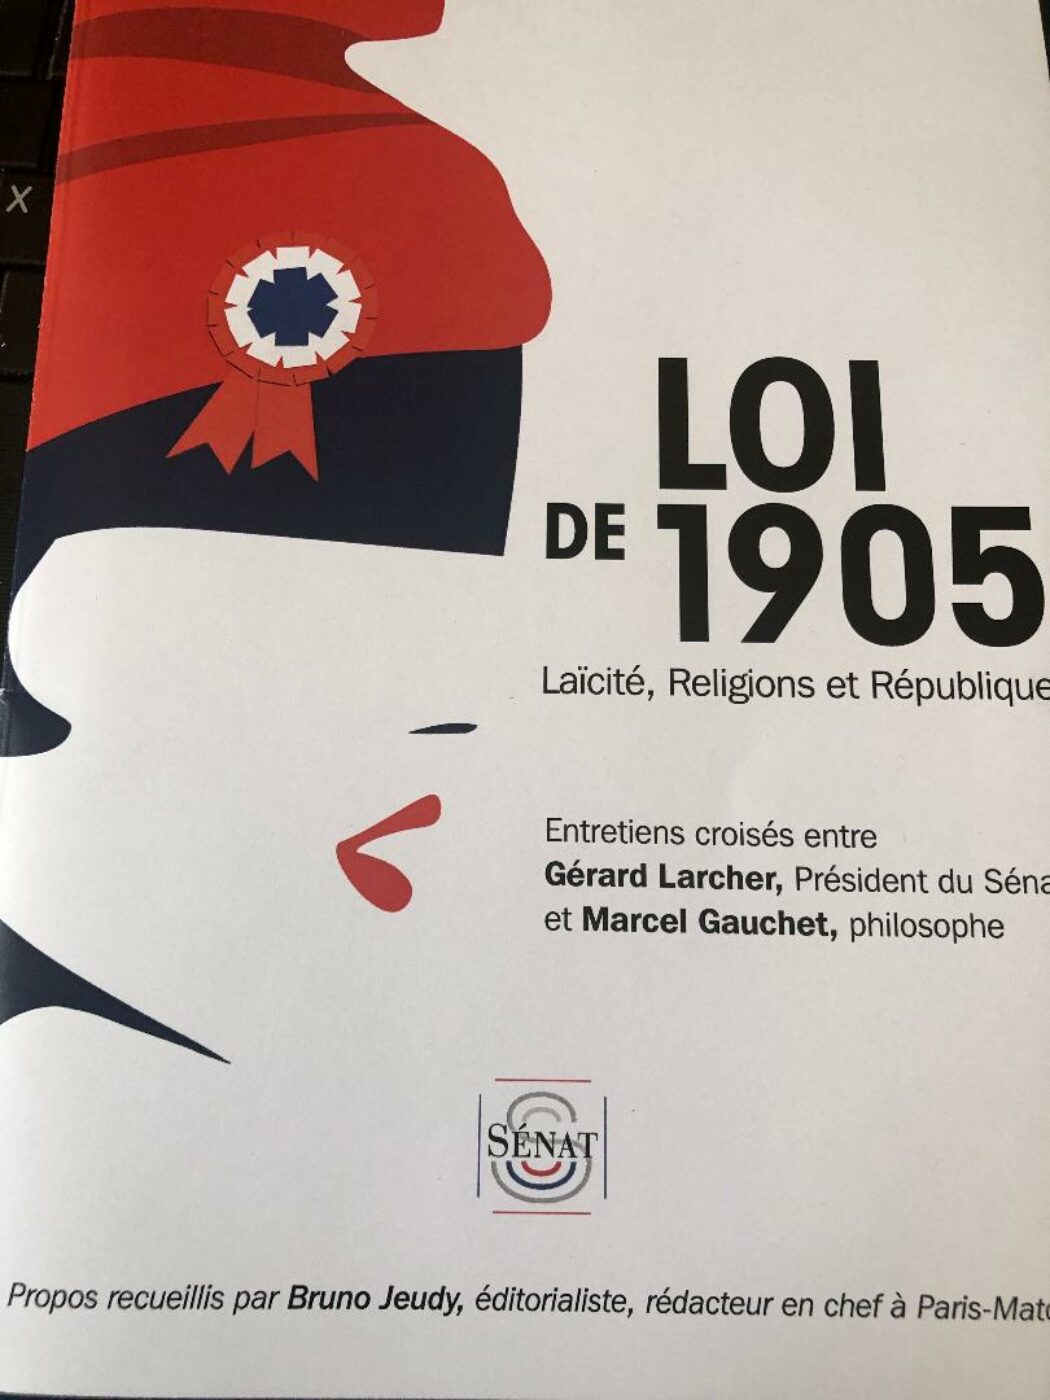 Gérard Larcher veut réformer la loi de 1905 pour avoir un islam “adapté”